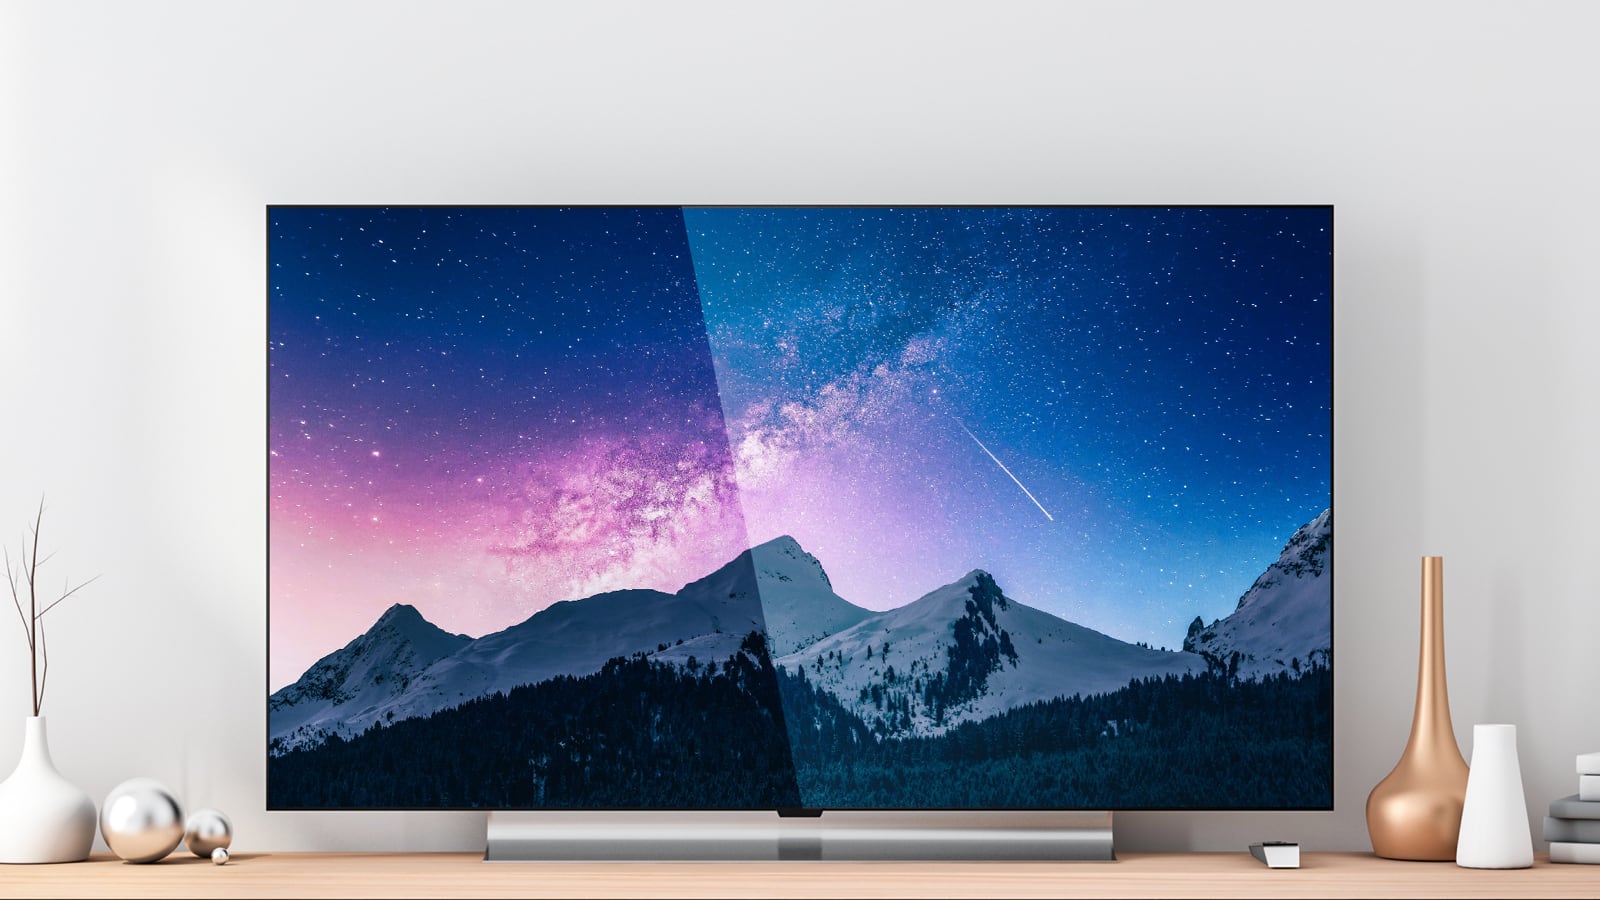 Flat screen OLED display TV